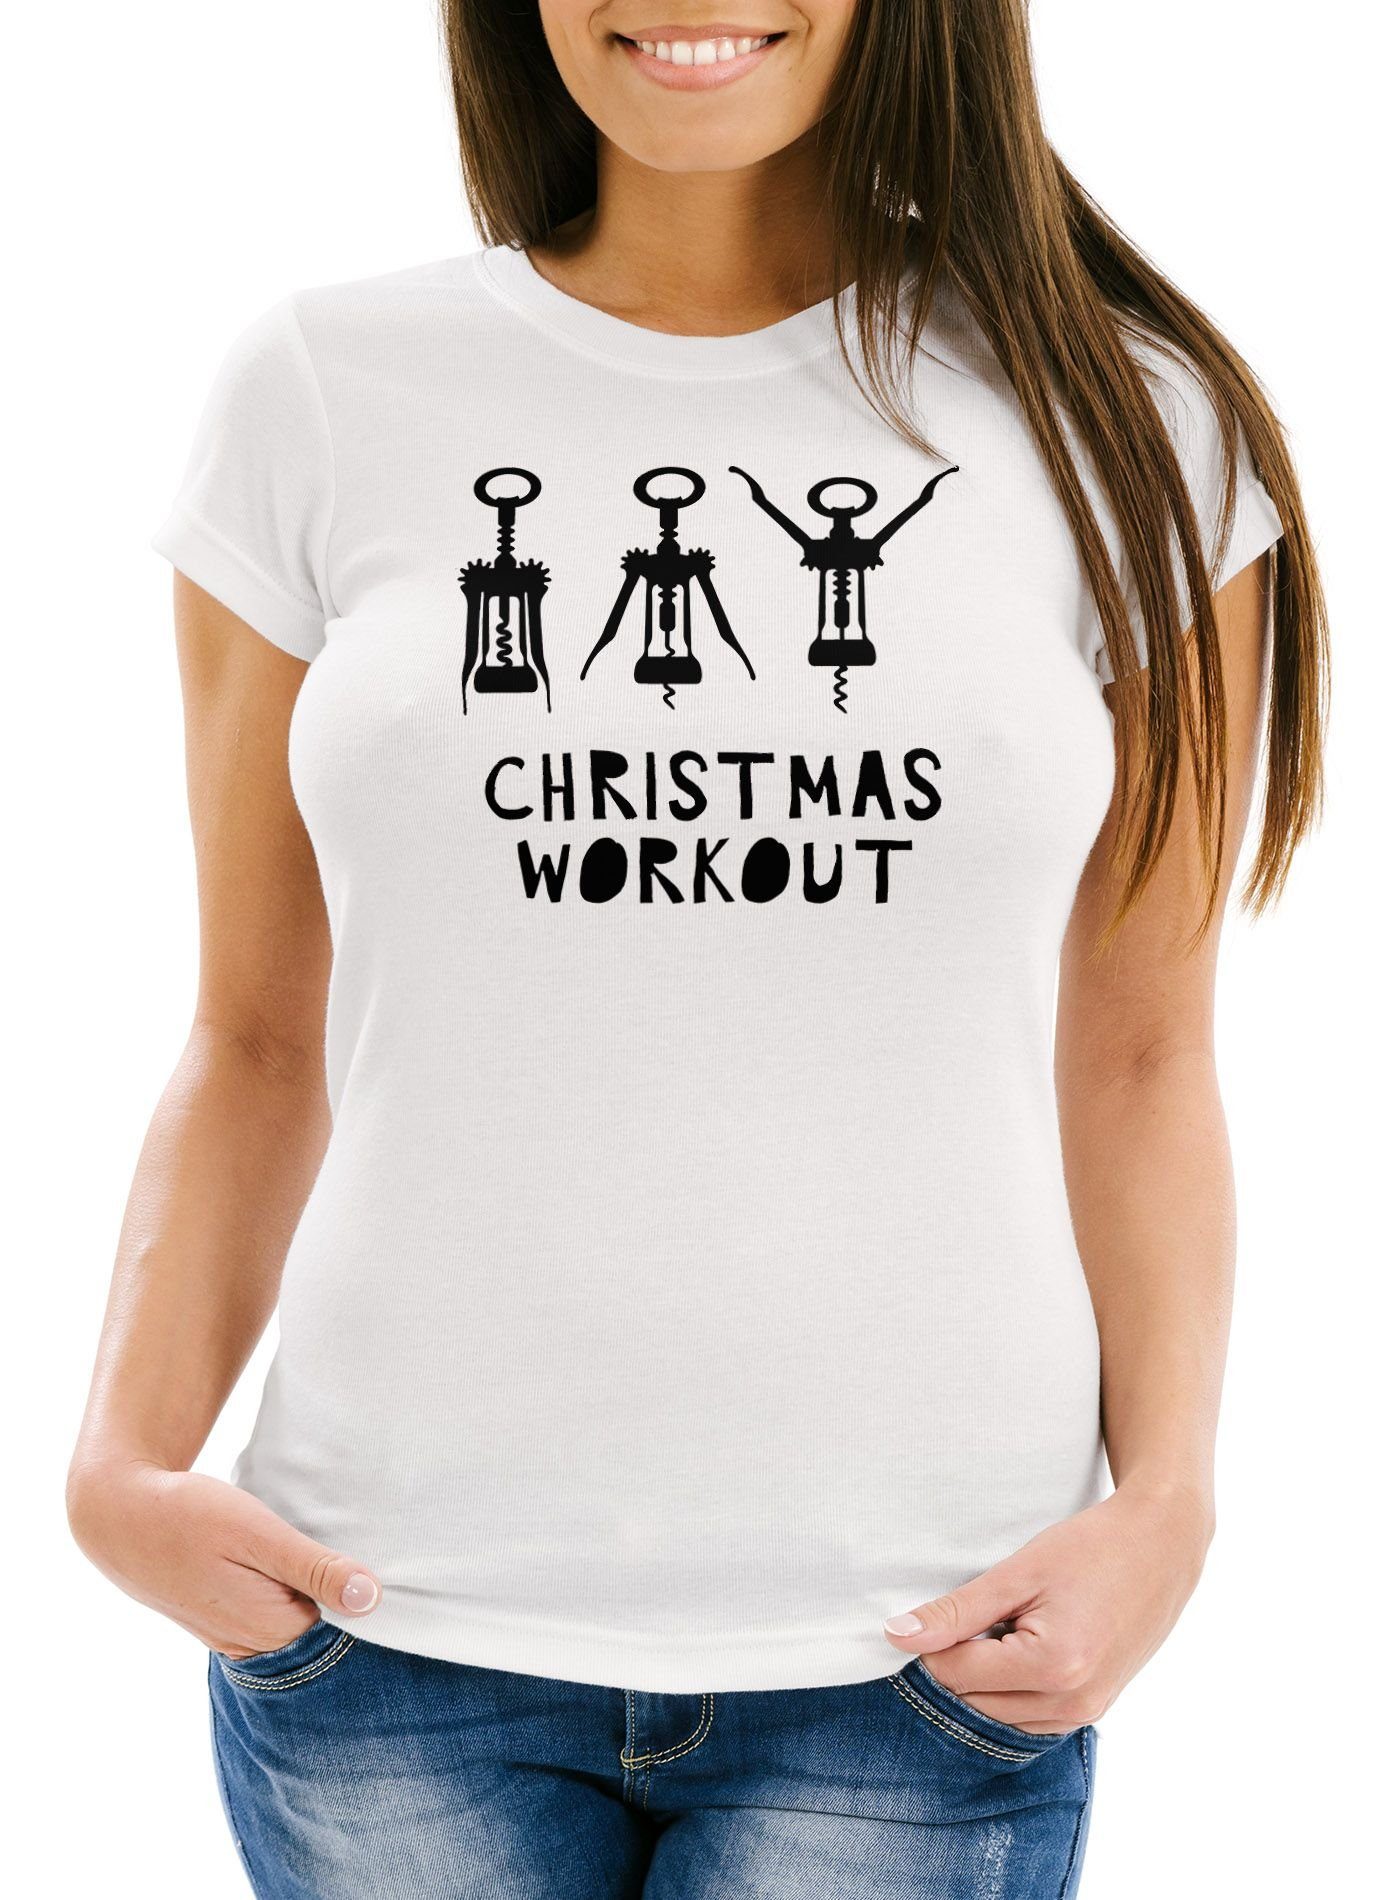 MoonWorks Print-Shirt Wein lustig Print Slim Moonworks® weiß Damen trinken Fun-Shirt Weihnachten mit Workout Christmas Korkenzieher Fit Flaschenöffner T-Shirt